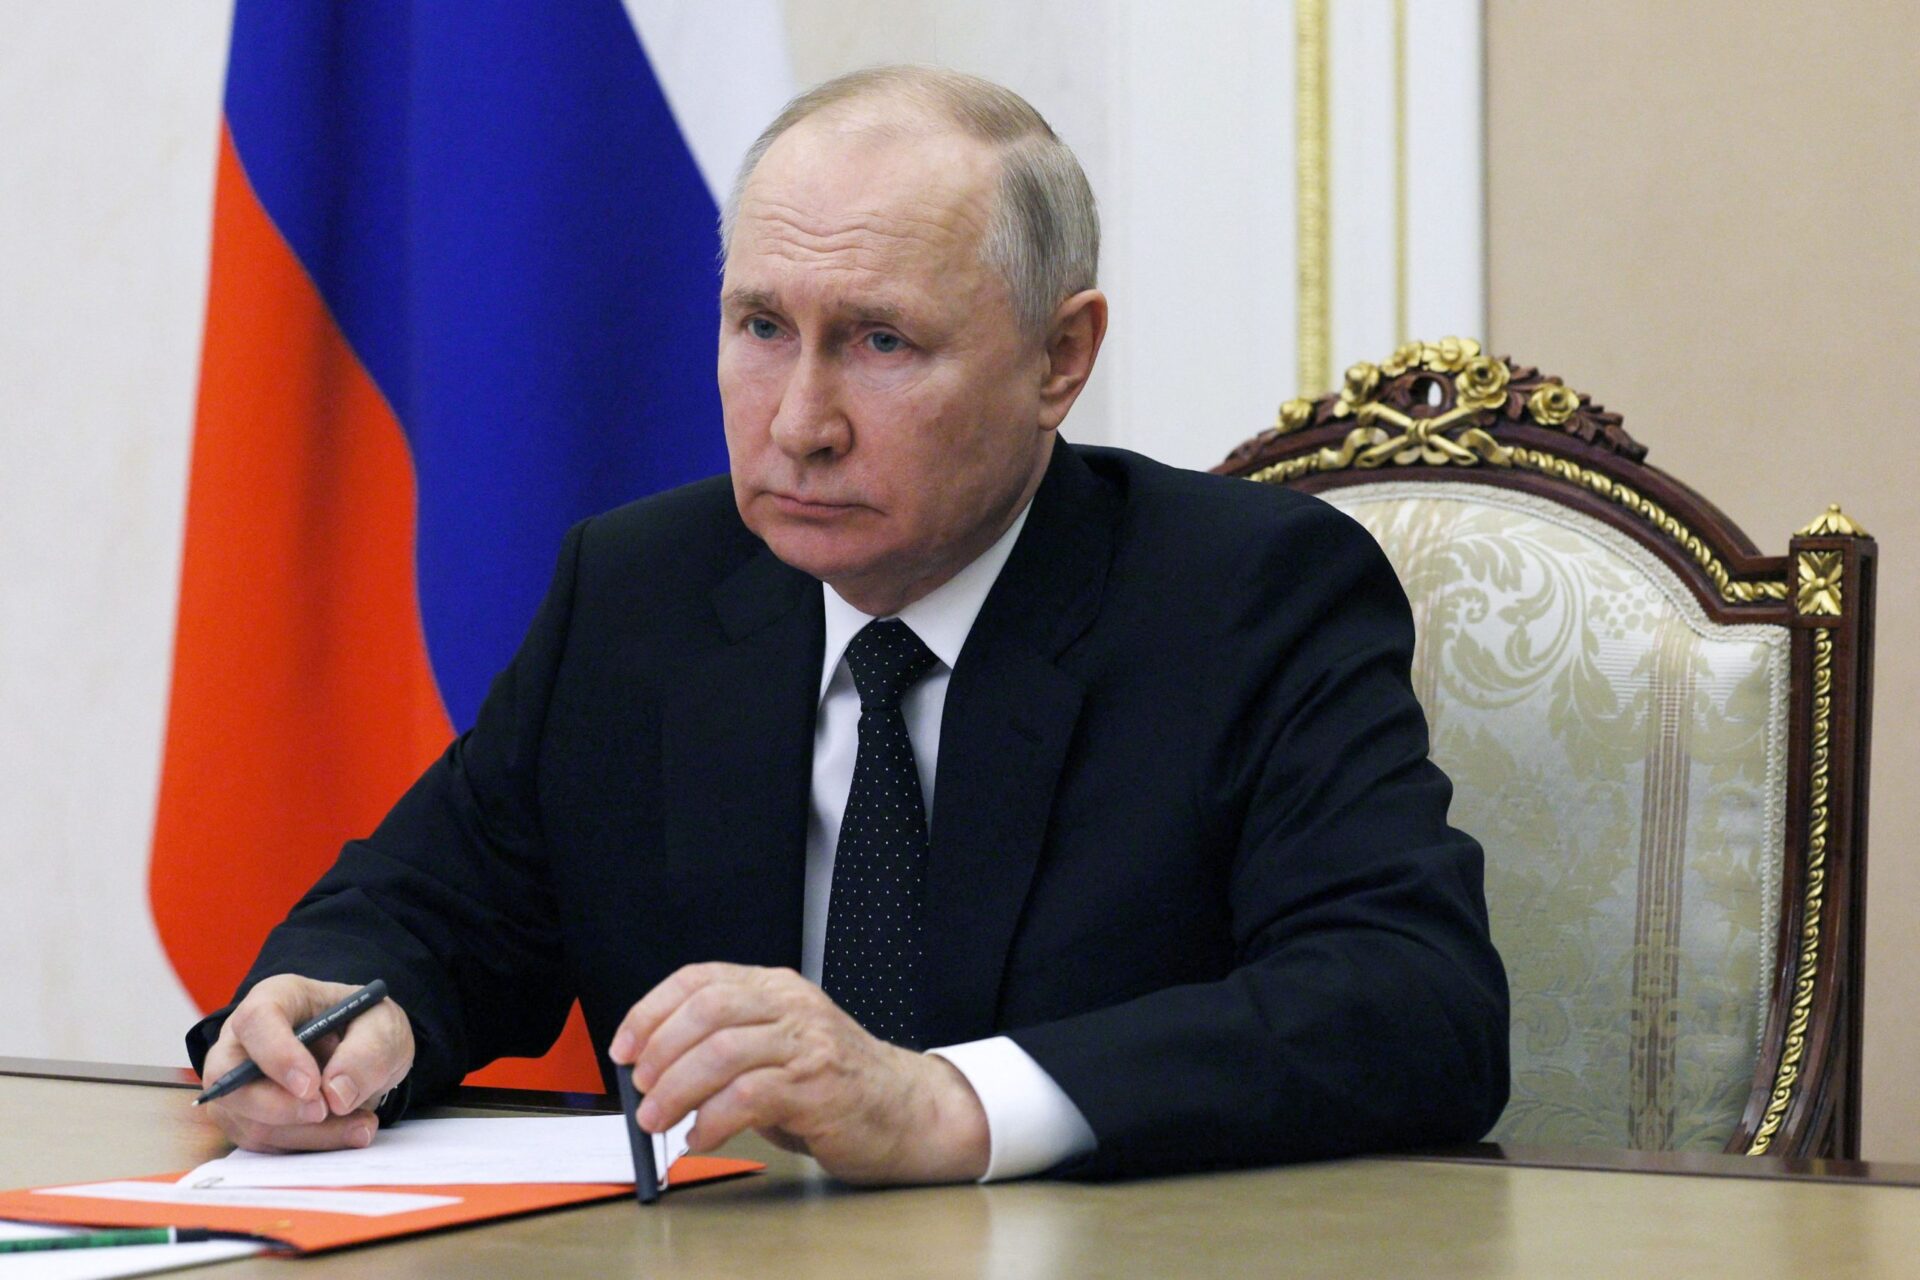 Presidente sul-africano obrigado a divulgar declaração sobre detenção de Putin